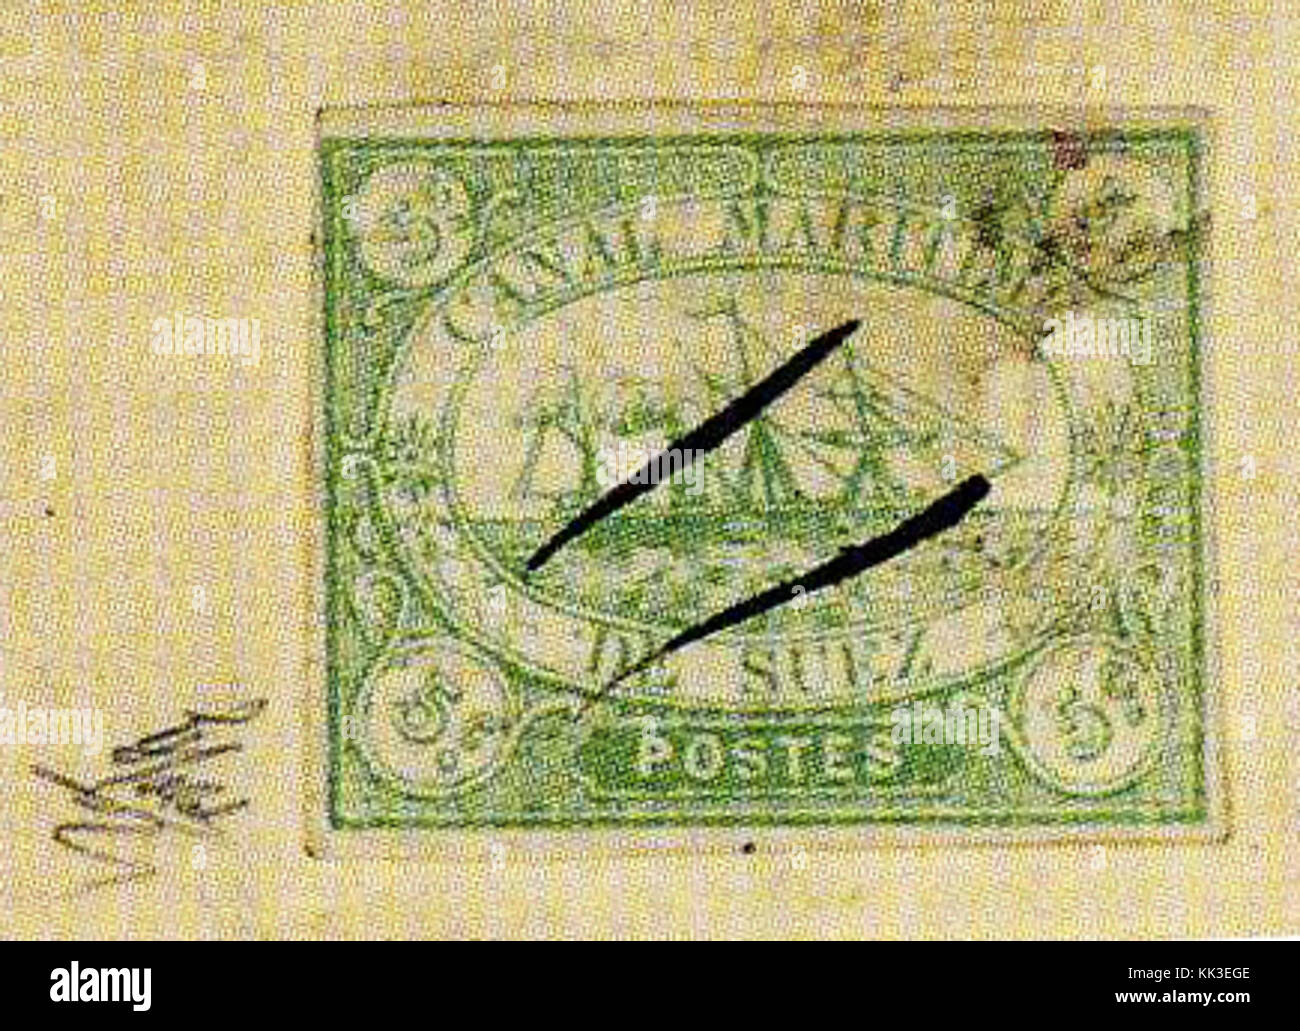 1868aug15 Canal maritime de Suez 5c lettre avec 4 Stock Photo